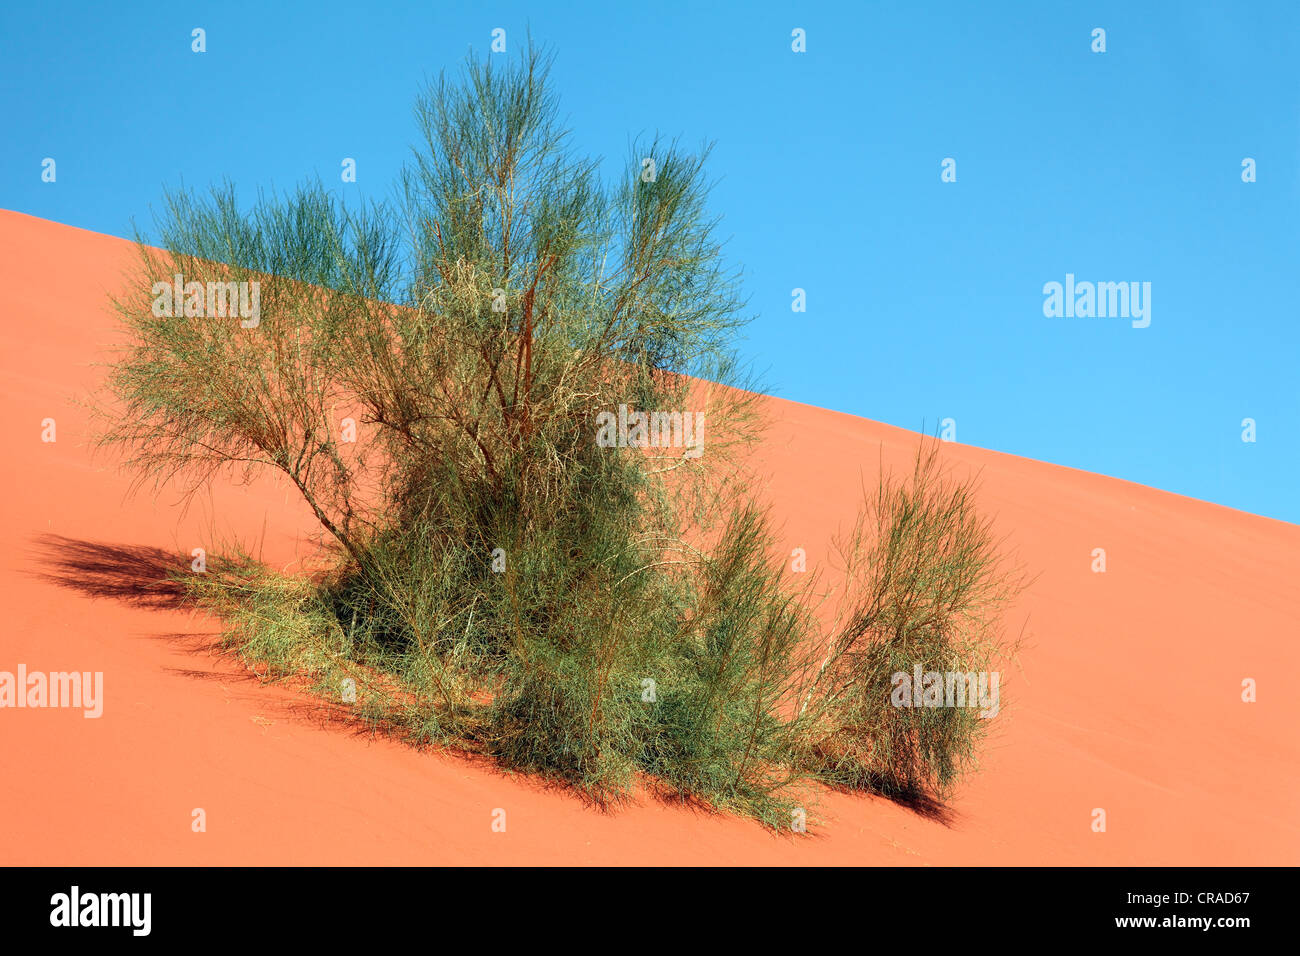 Grüner Busch auf einer roten Sanddüne, blauer Himmel, Wüste, Wadi Rum, Haschemitischen Königreich Jordanien, Naher Osten, Asien Stockfoto